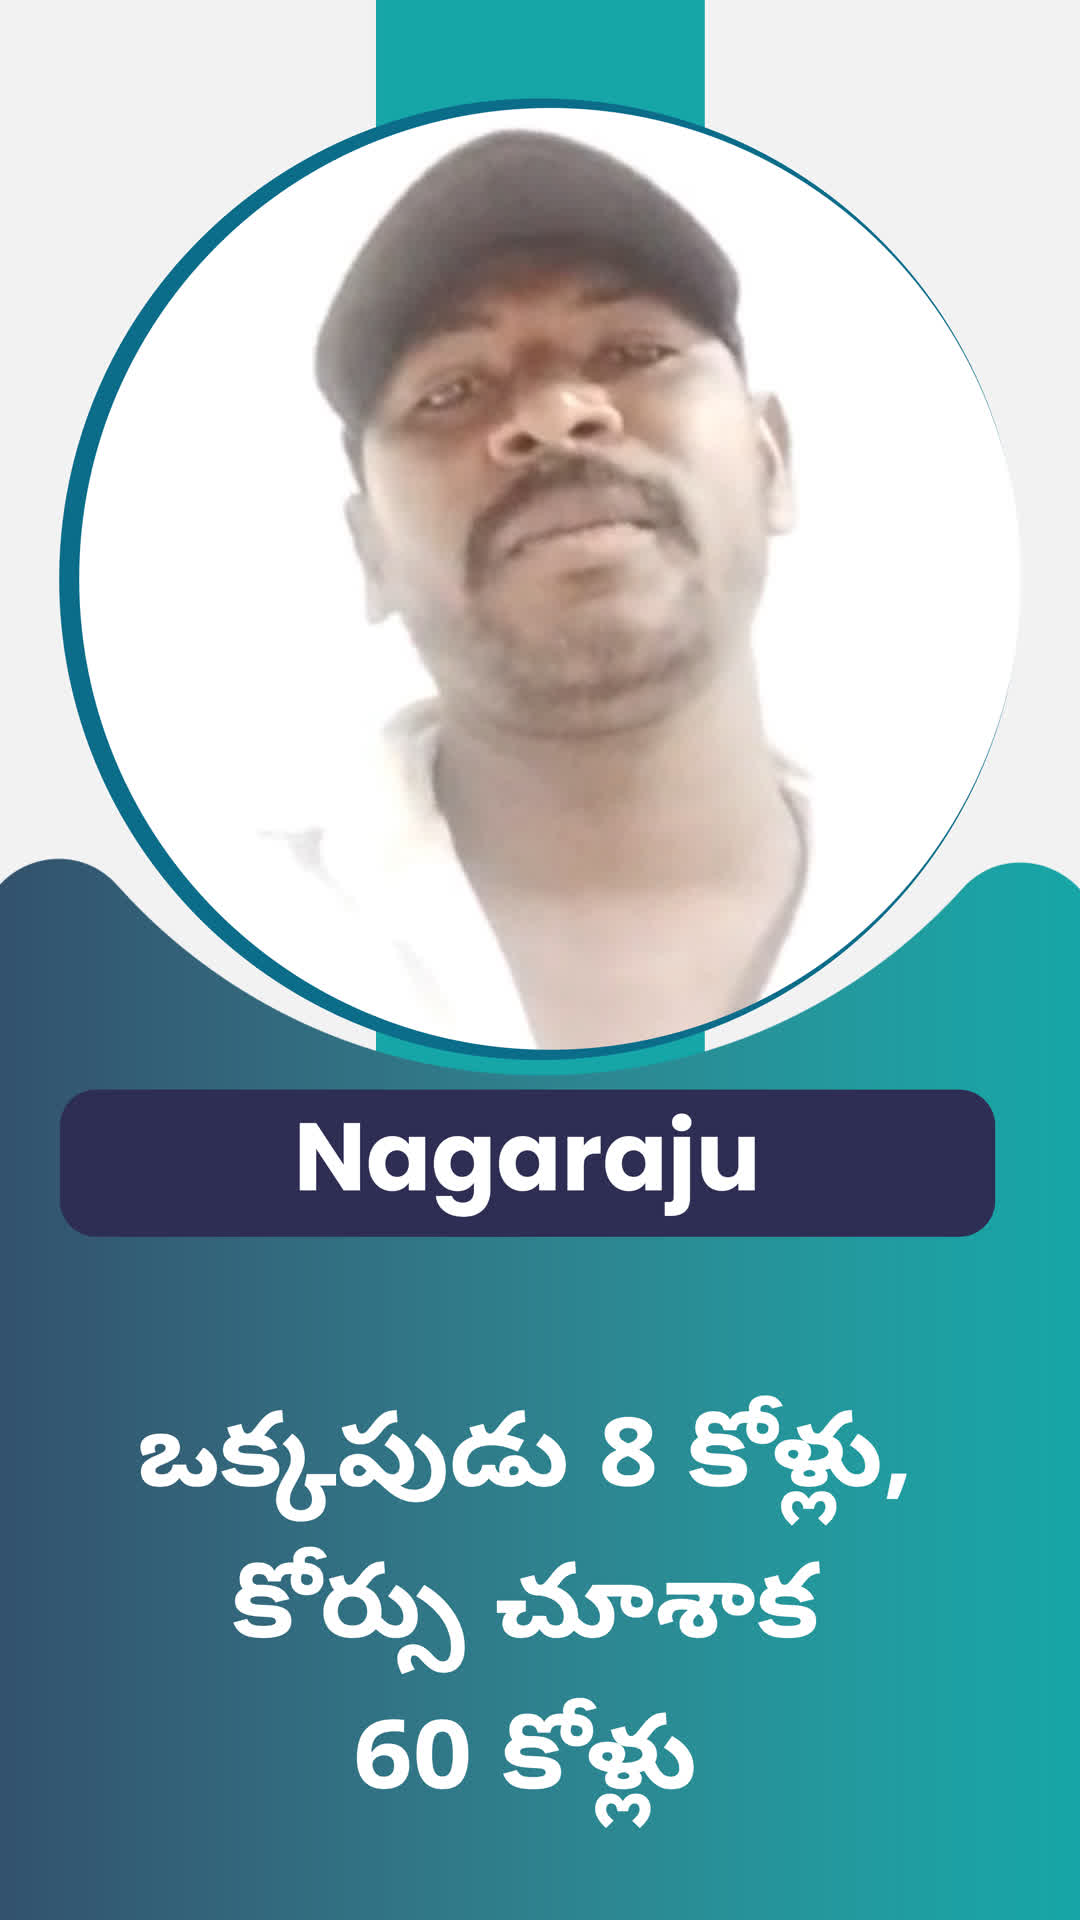 T .Nagaraju's Honest Review of ffreedom app - Bengaluru Rural ,Andhra Pradesh